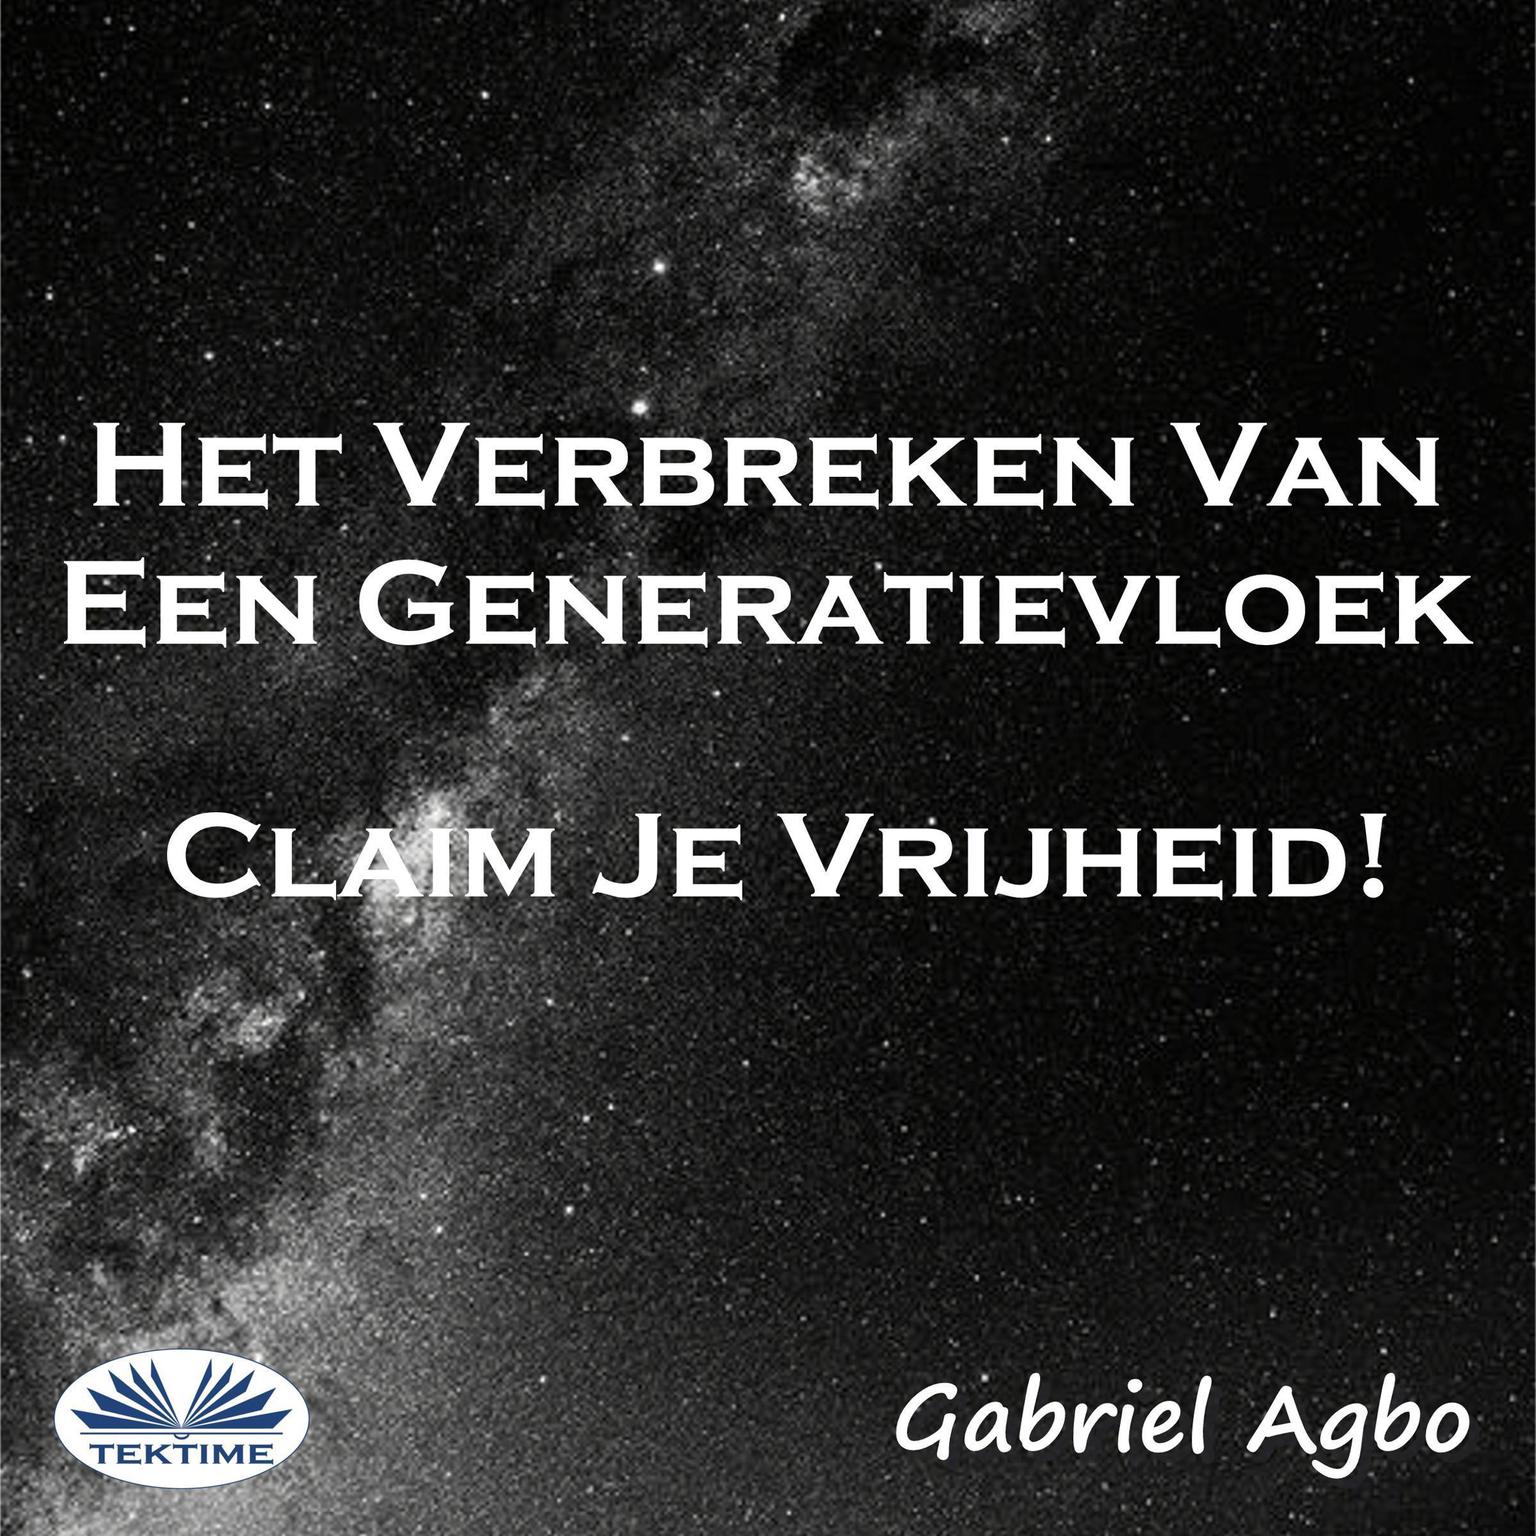 Het Verbreken Van Een Generatievloek: Claim Je Vrijheid! Audiobook, by Gabriel  Agbo